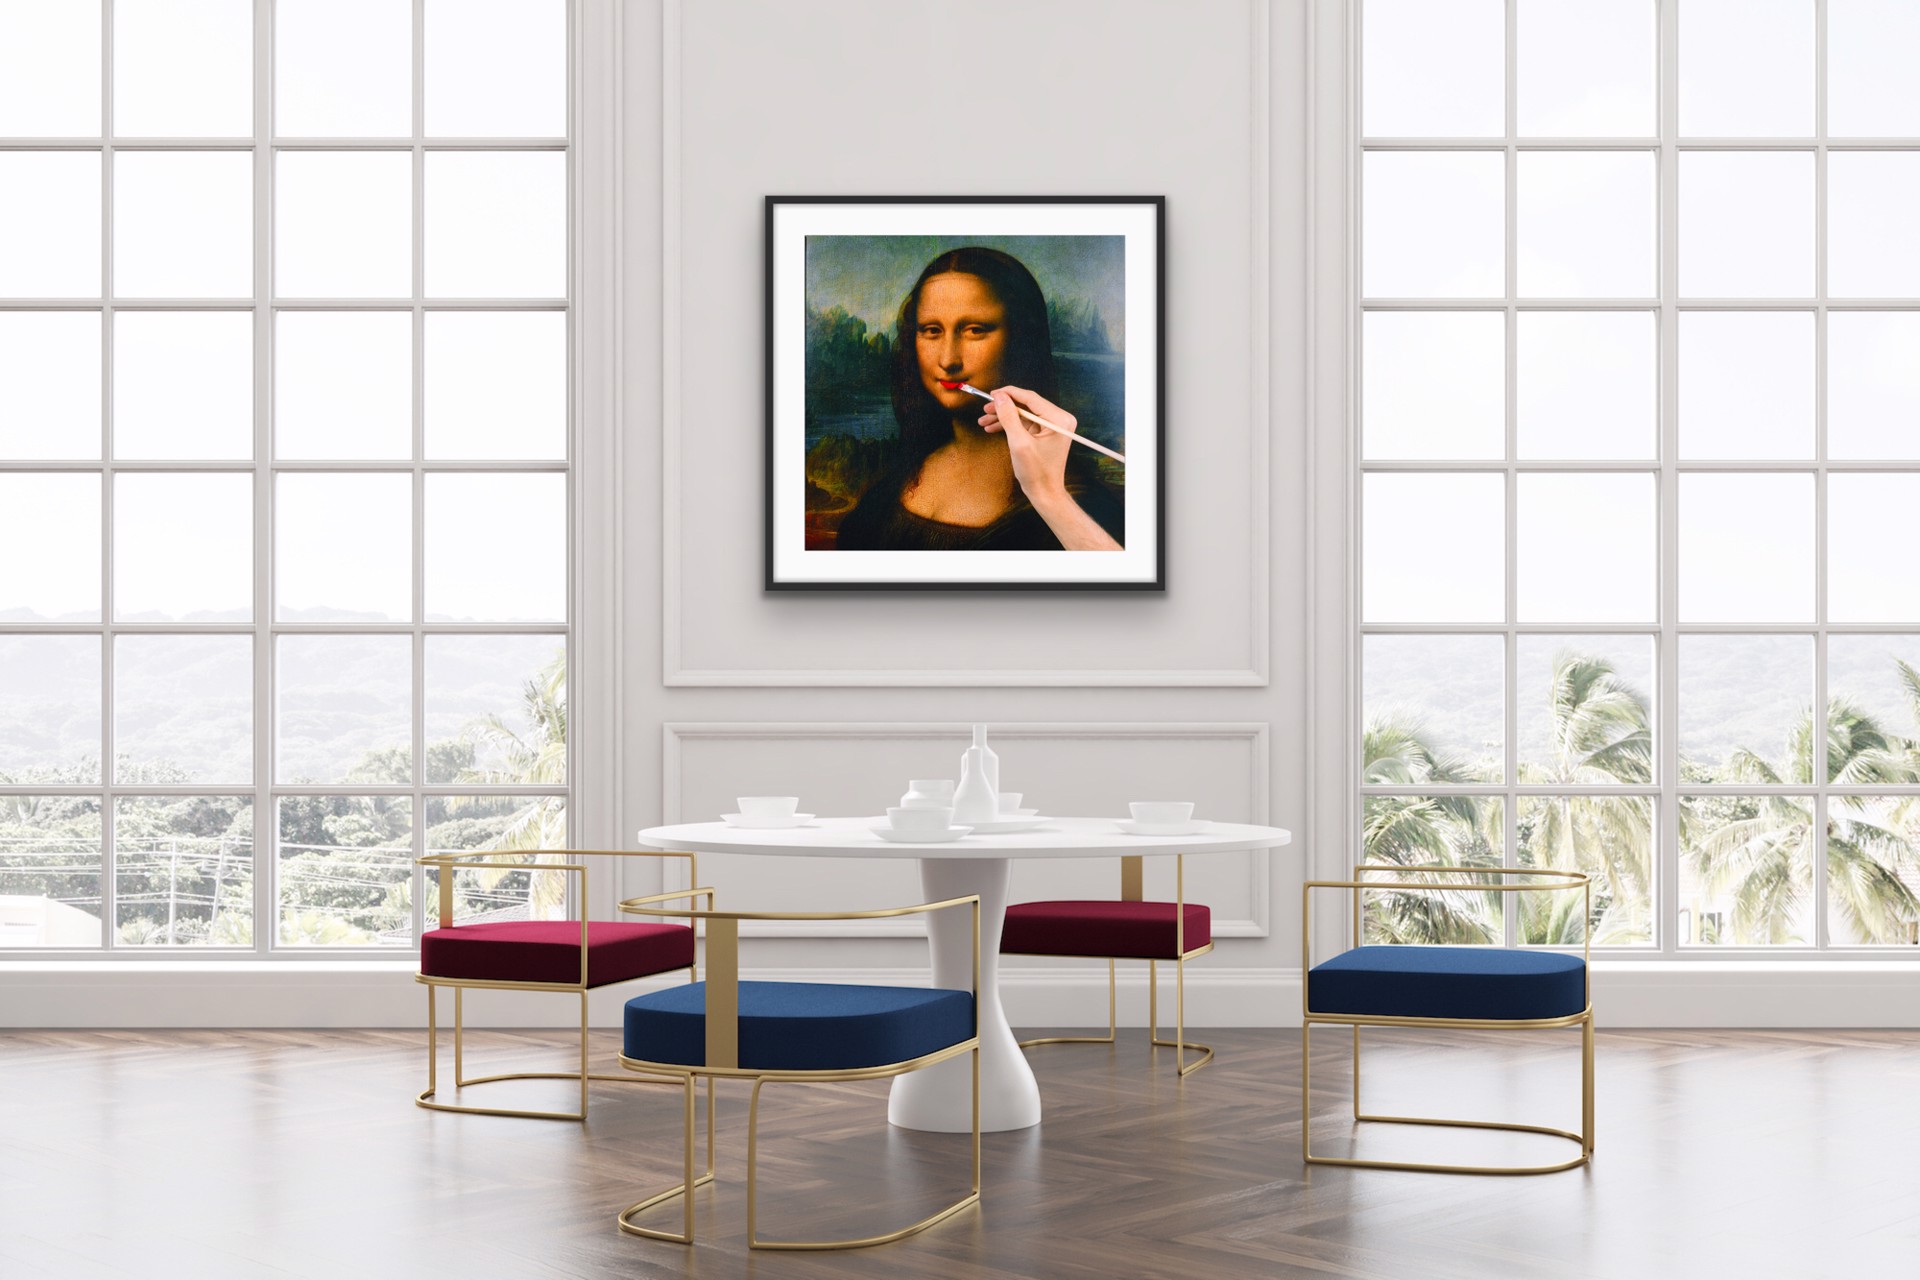 Mona Lisa by Tyler Shields